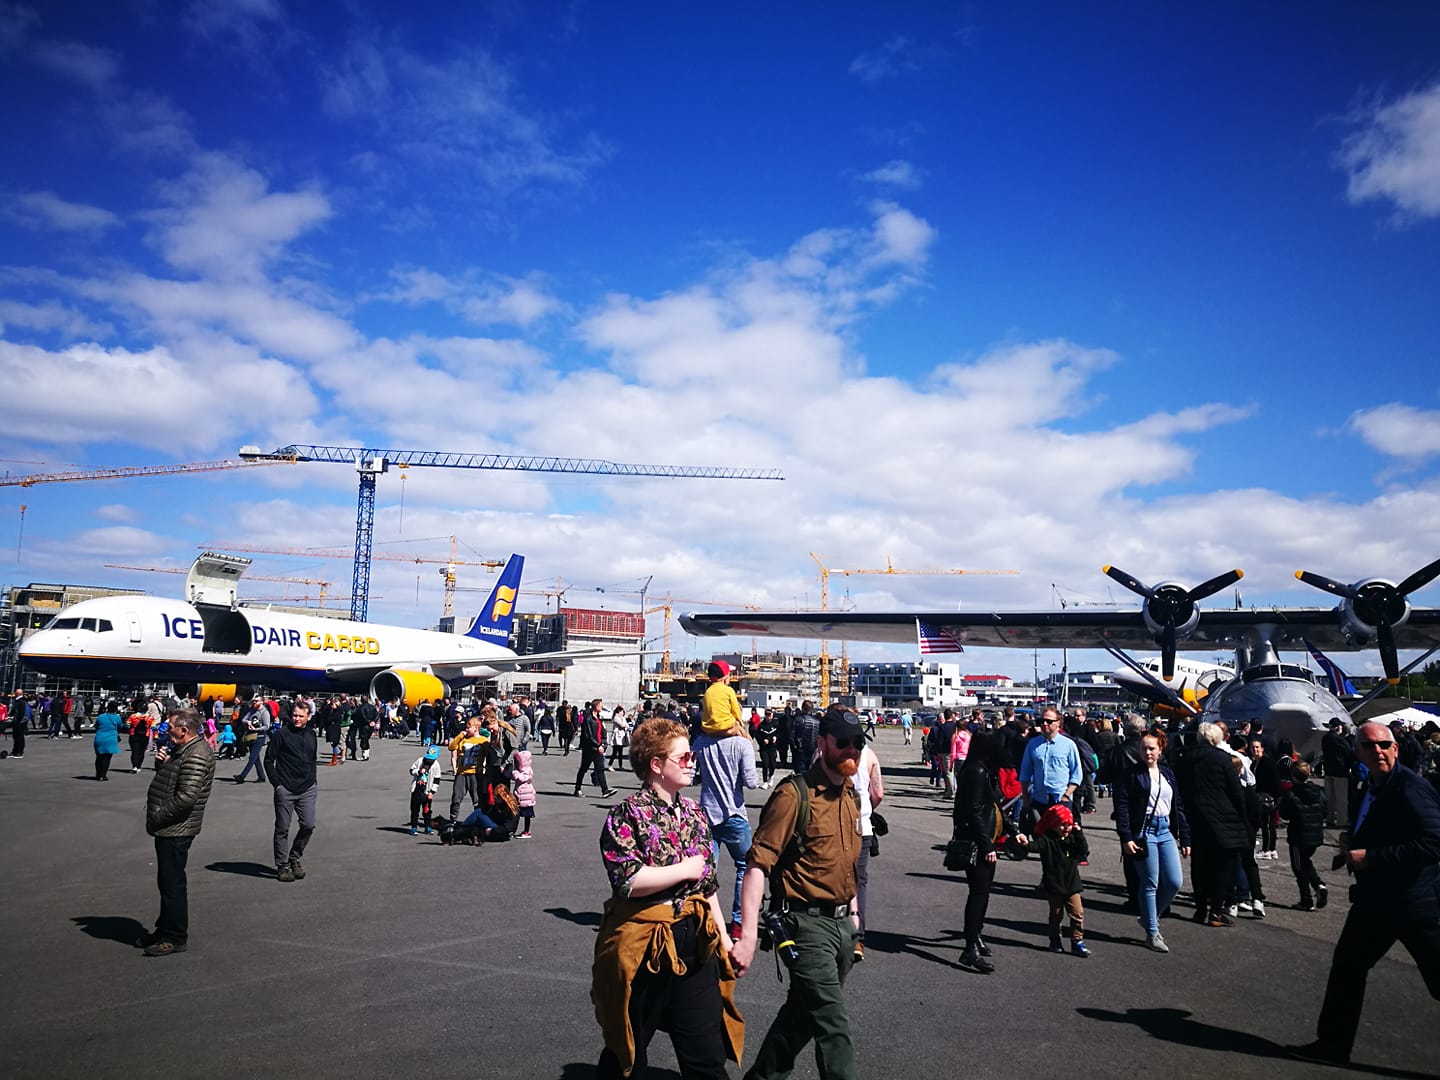 Reykjavik Airshow 2019 // Source: Flugblogg